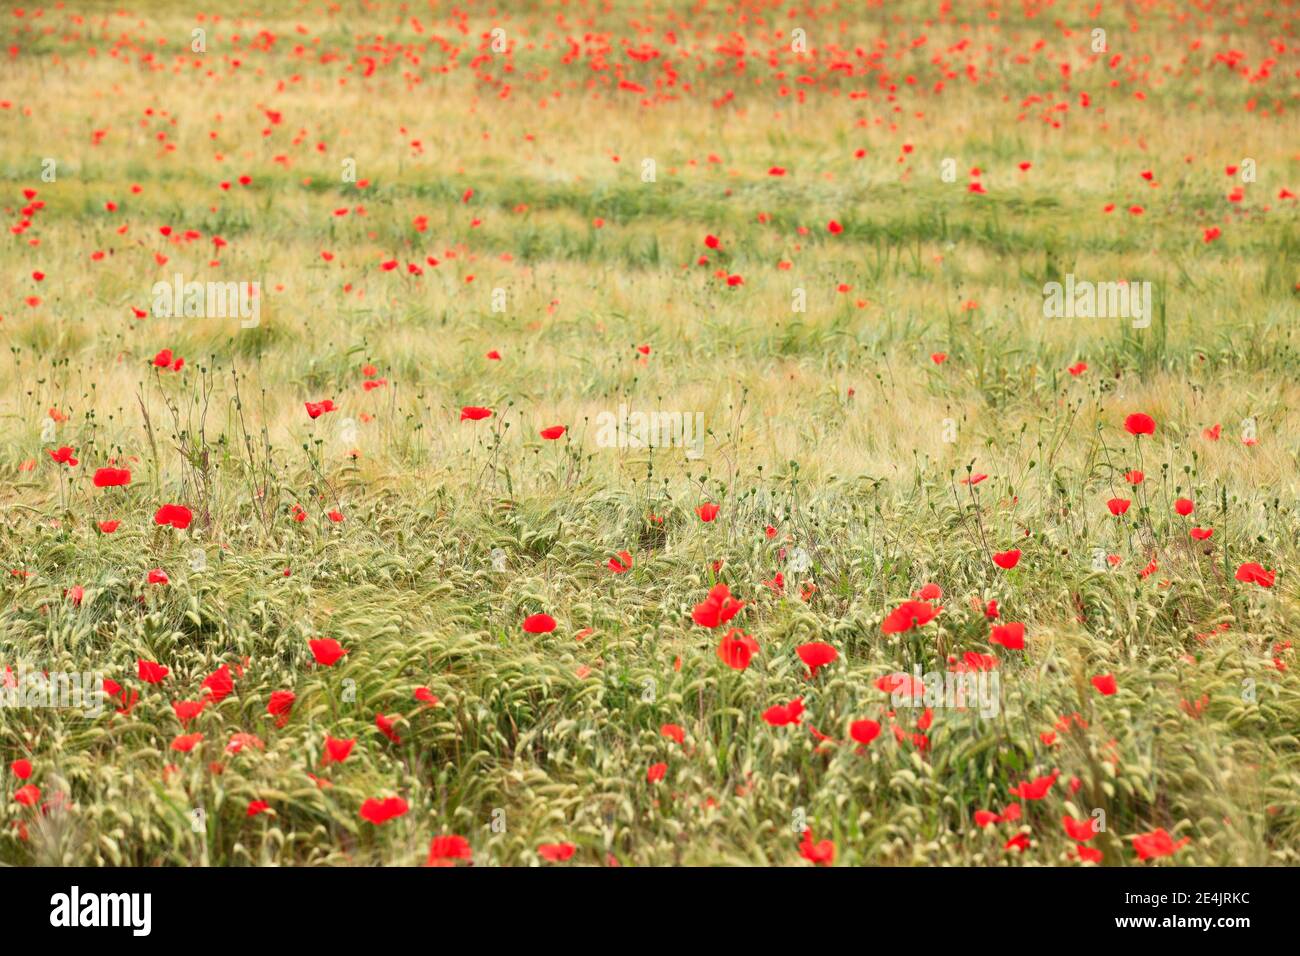 Wheat and poppy field, Switzerland Stock Photo